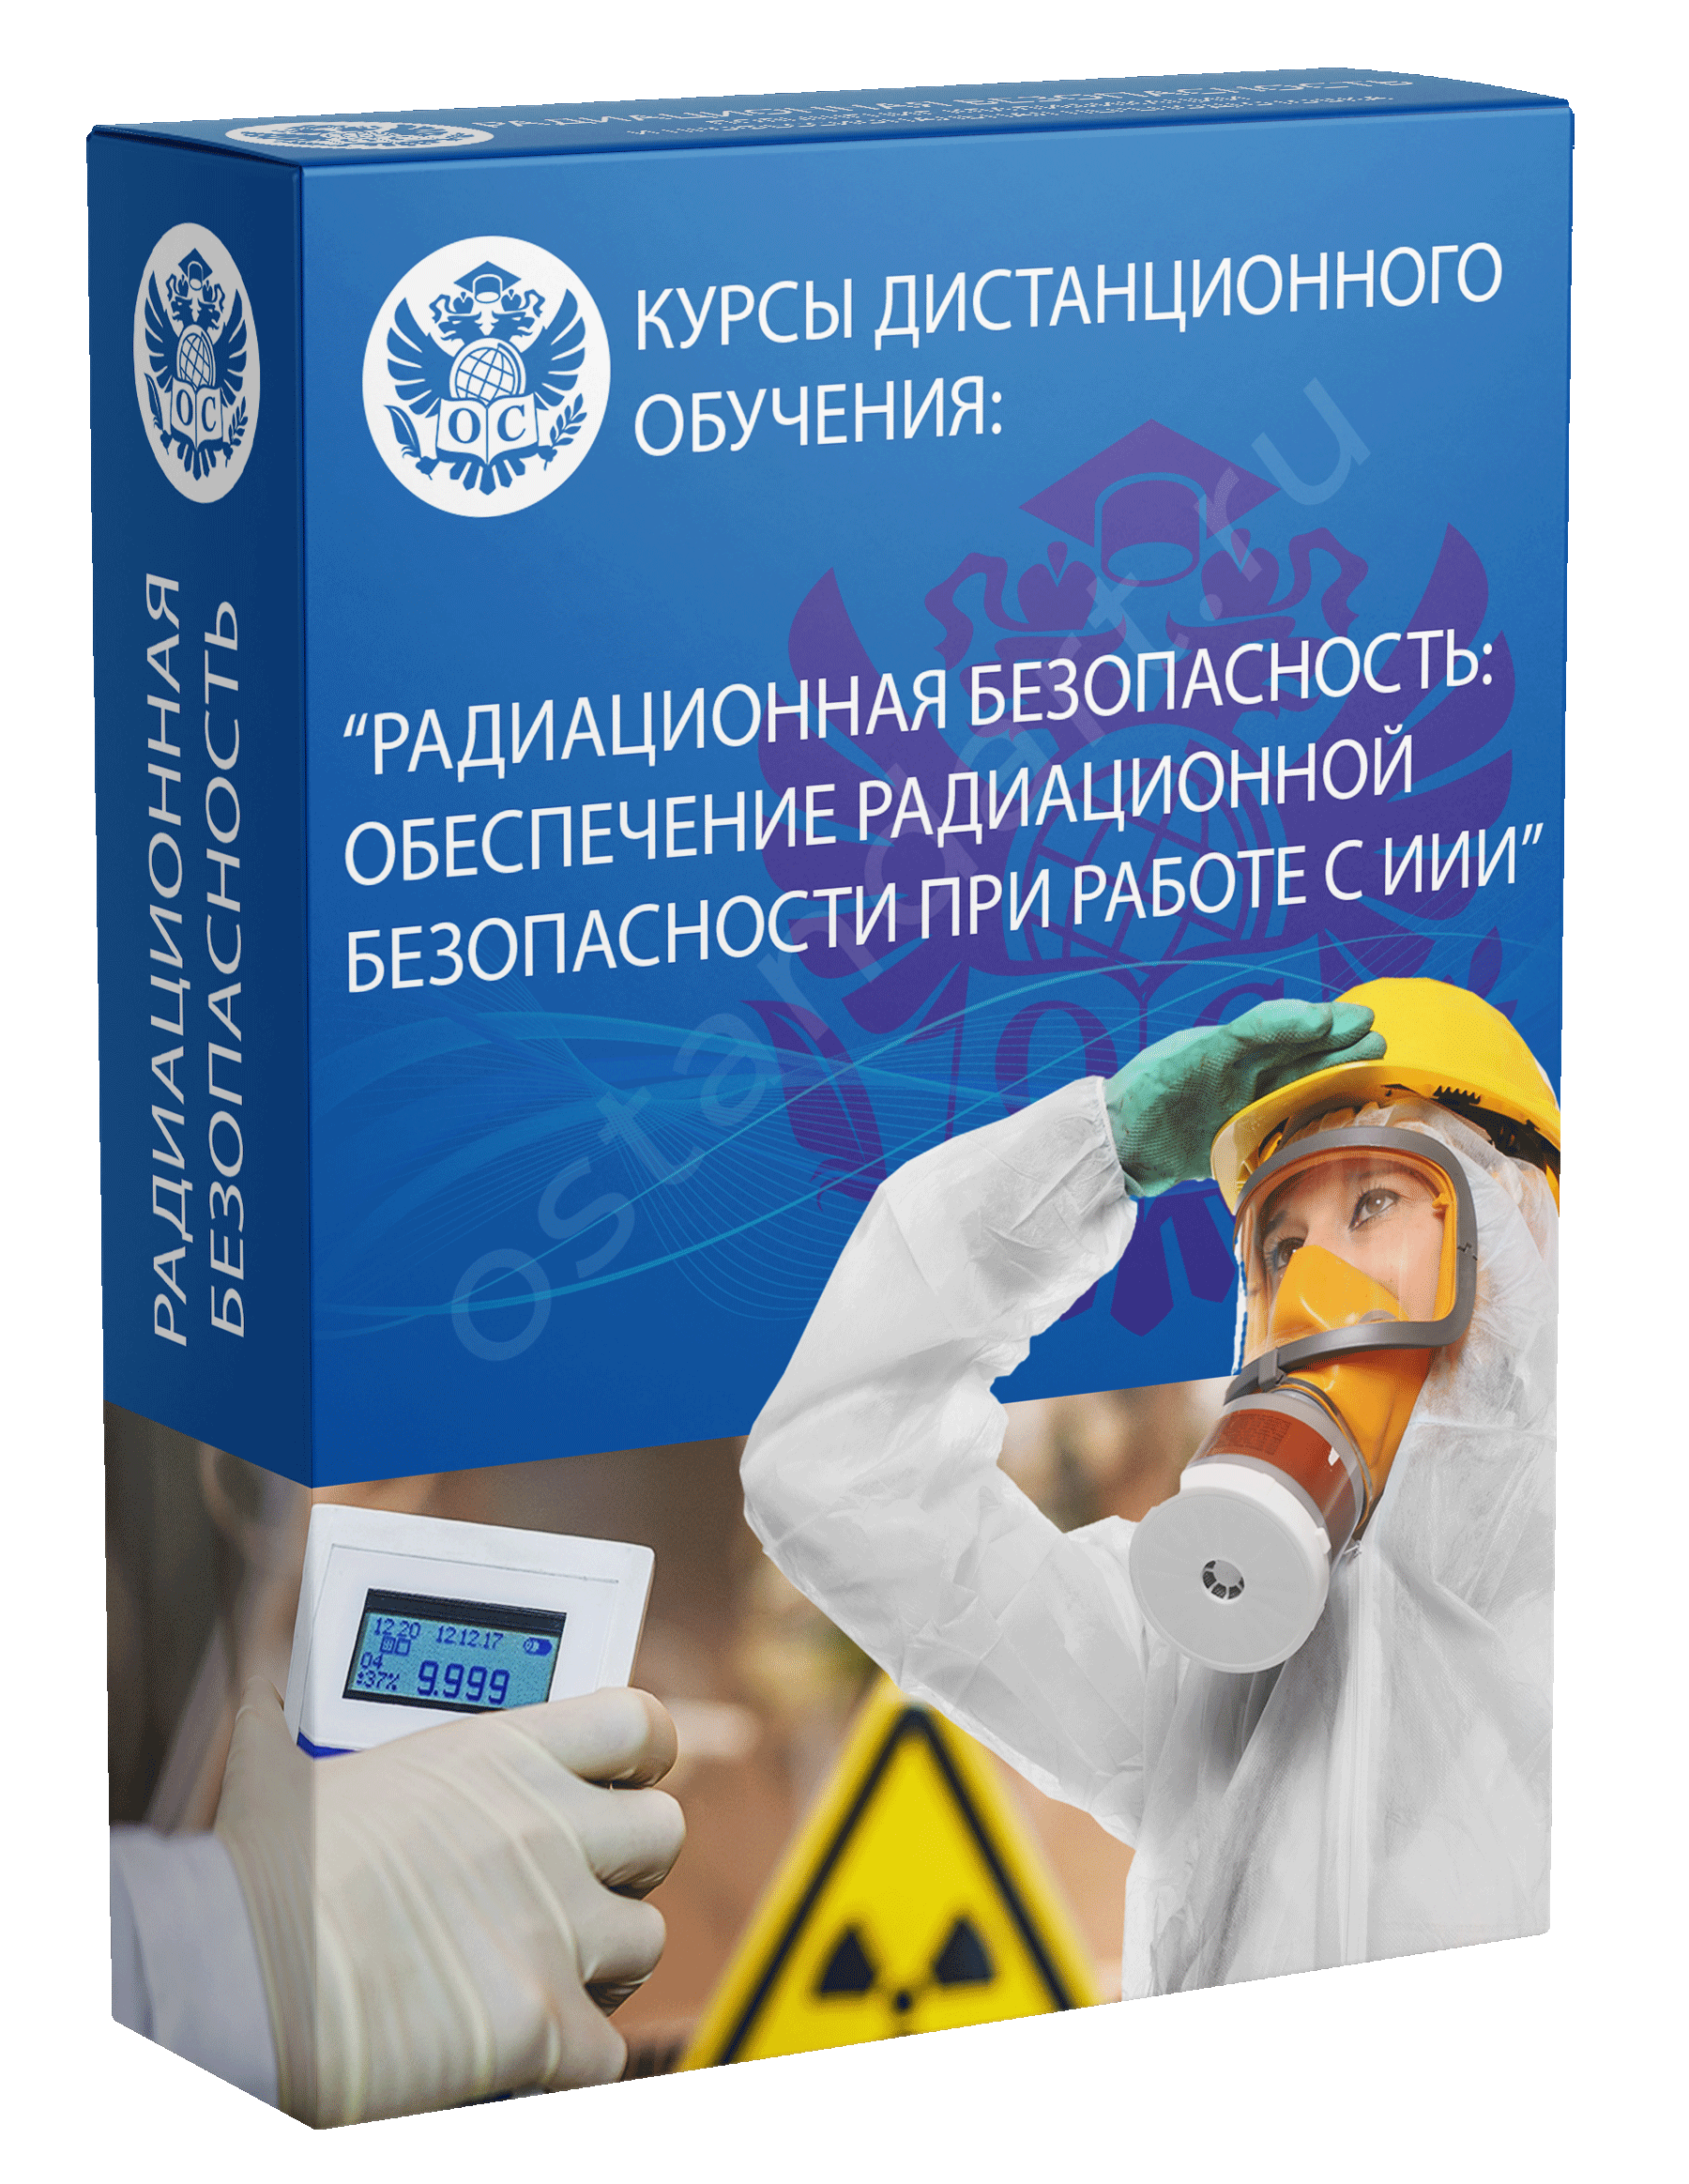 Радиационная безопасность: обеспечение радиационной безопасности при работе с ИИИ курс обучения